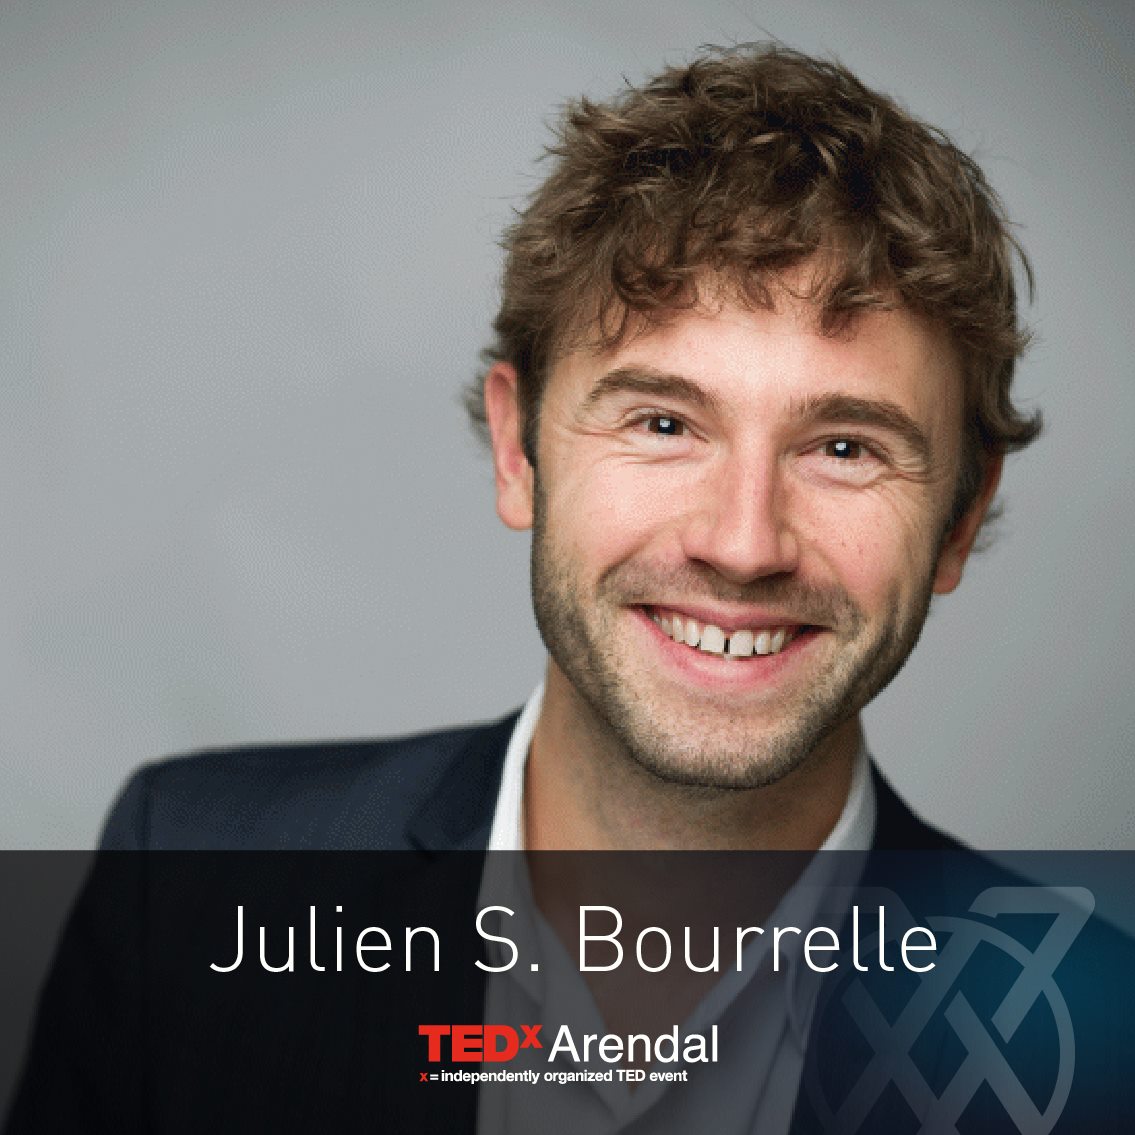 Julien S. Bourrelle